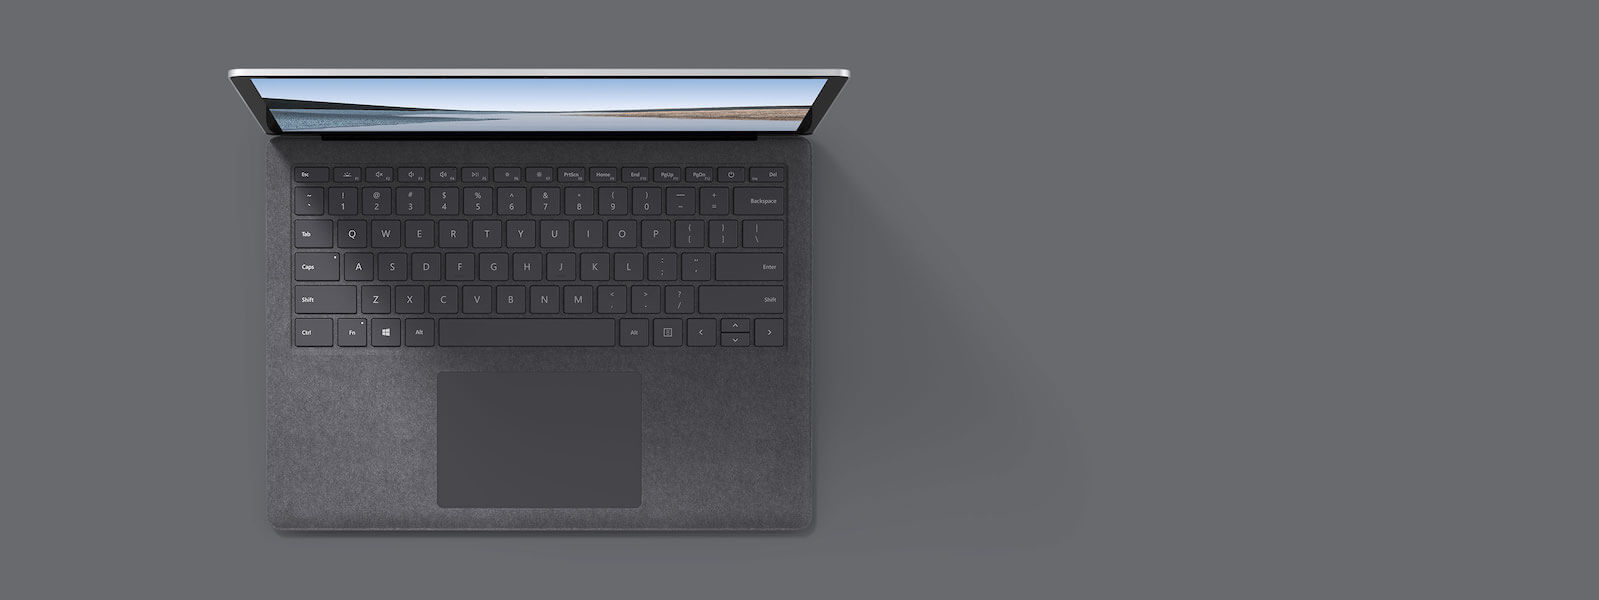 亮铂金 13.5 英寸 Surface Laptop 3 俯视图